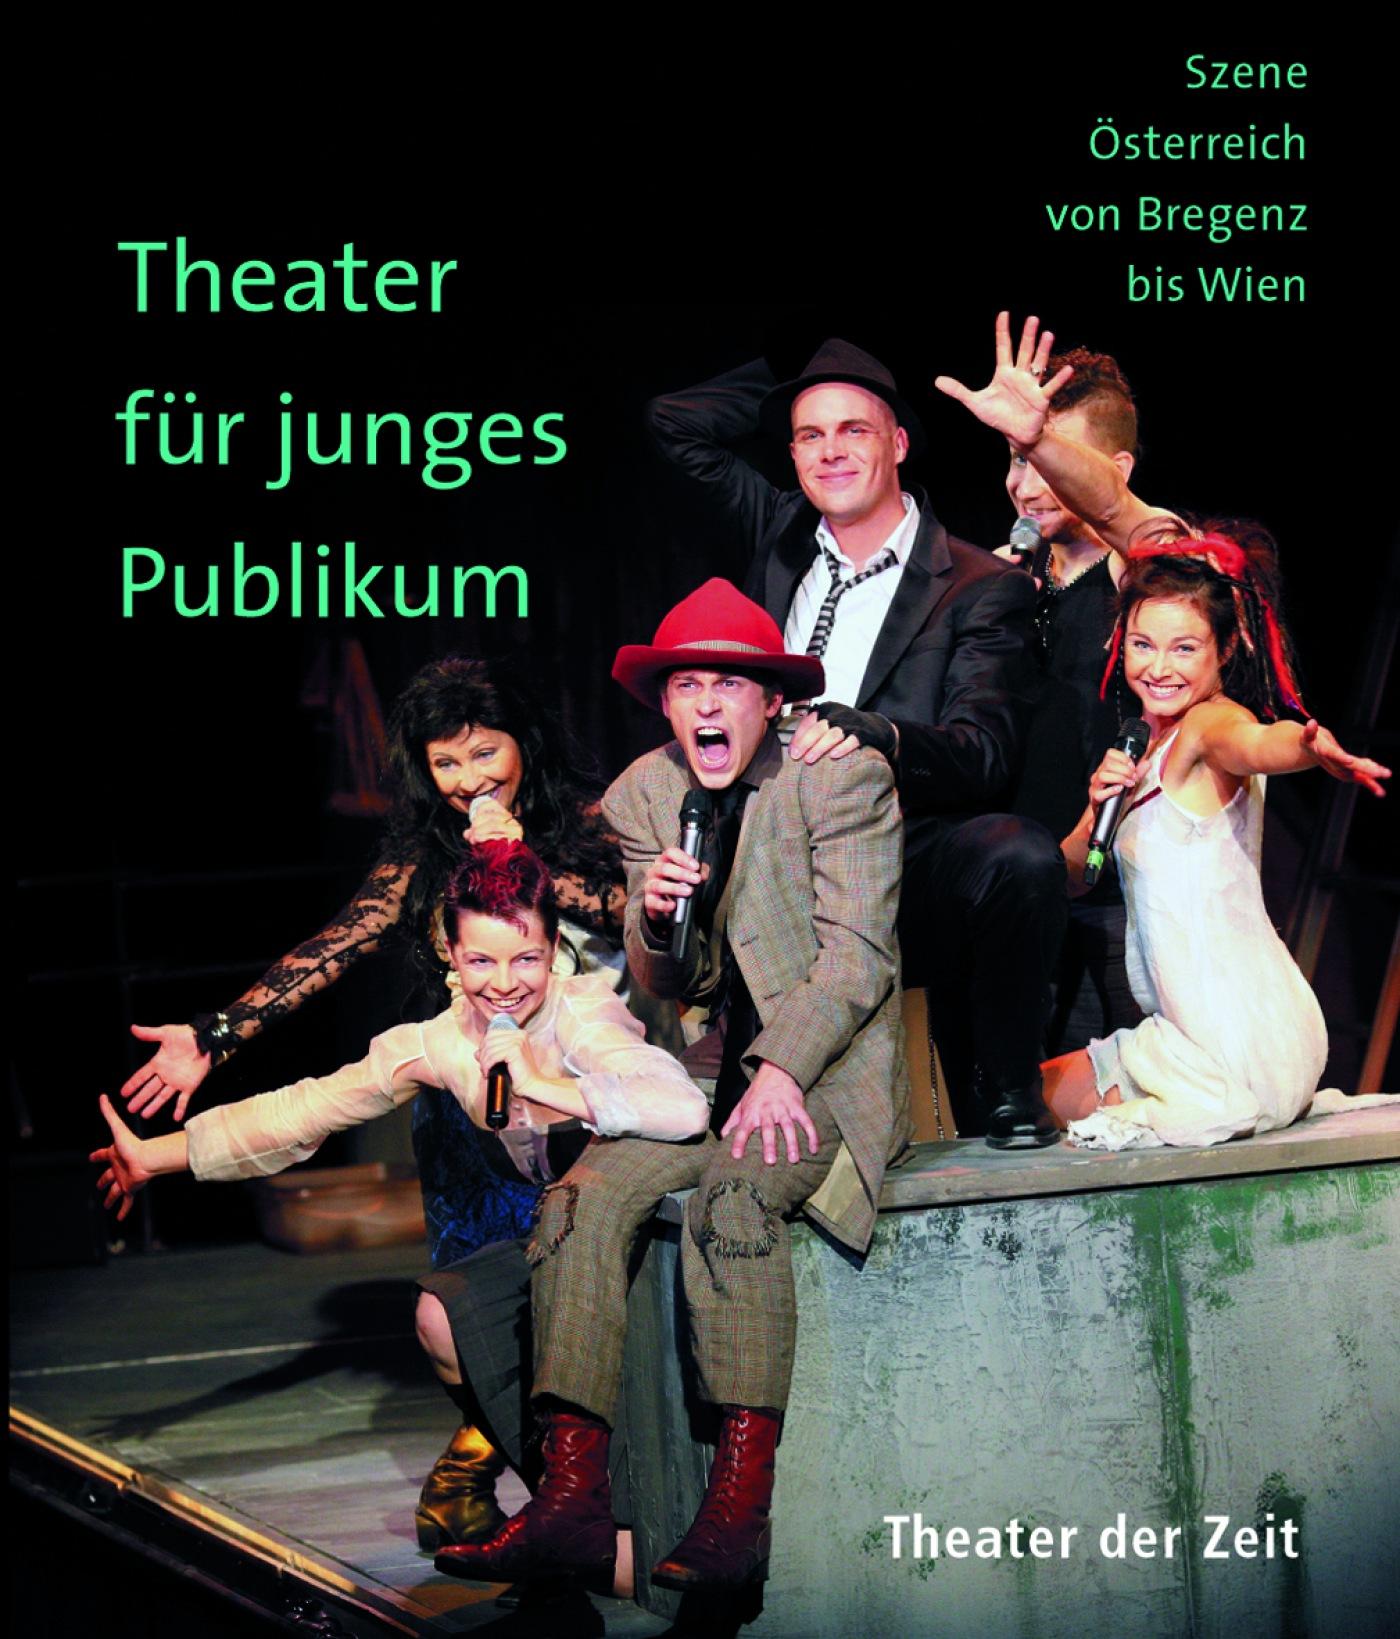 "Theater für junges Publikum"